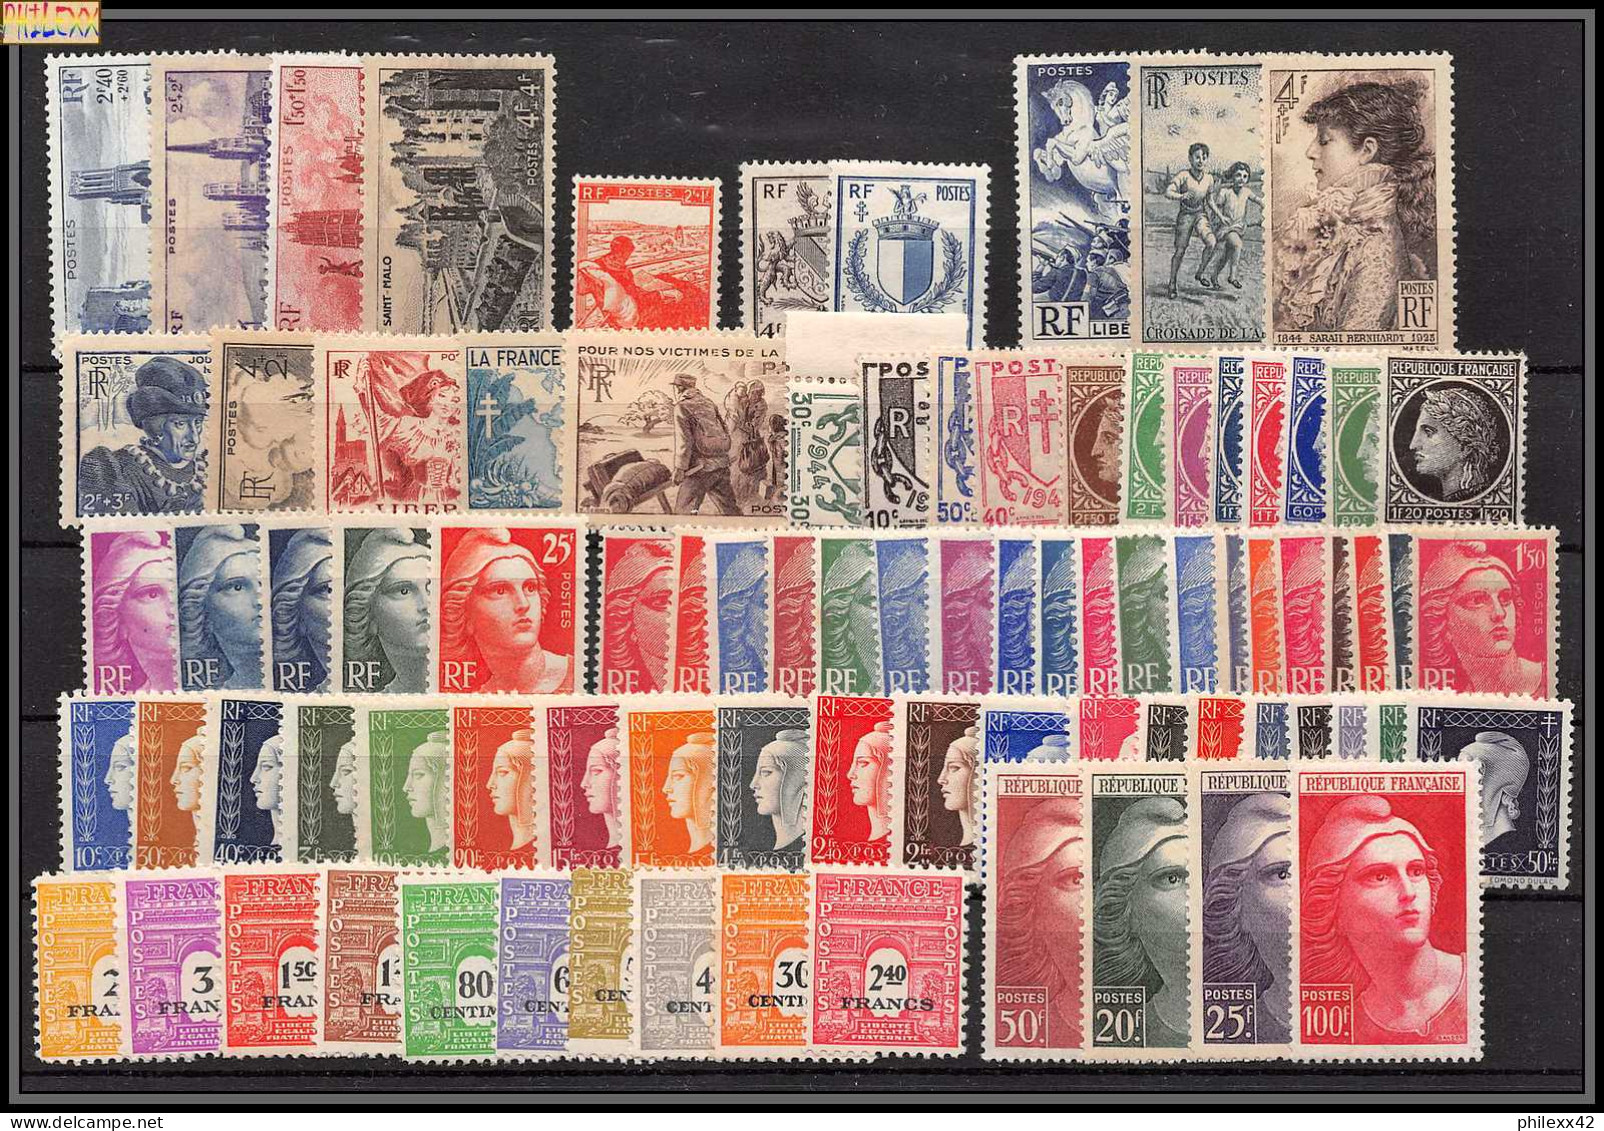 Collection Lot FRANCE COMPLET 1940 / 1969 cote 3123 euros neuf ** mnh parfait état TOP qualité voir description